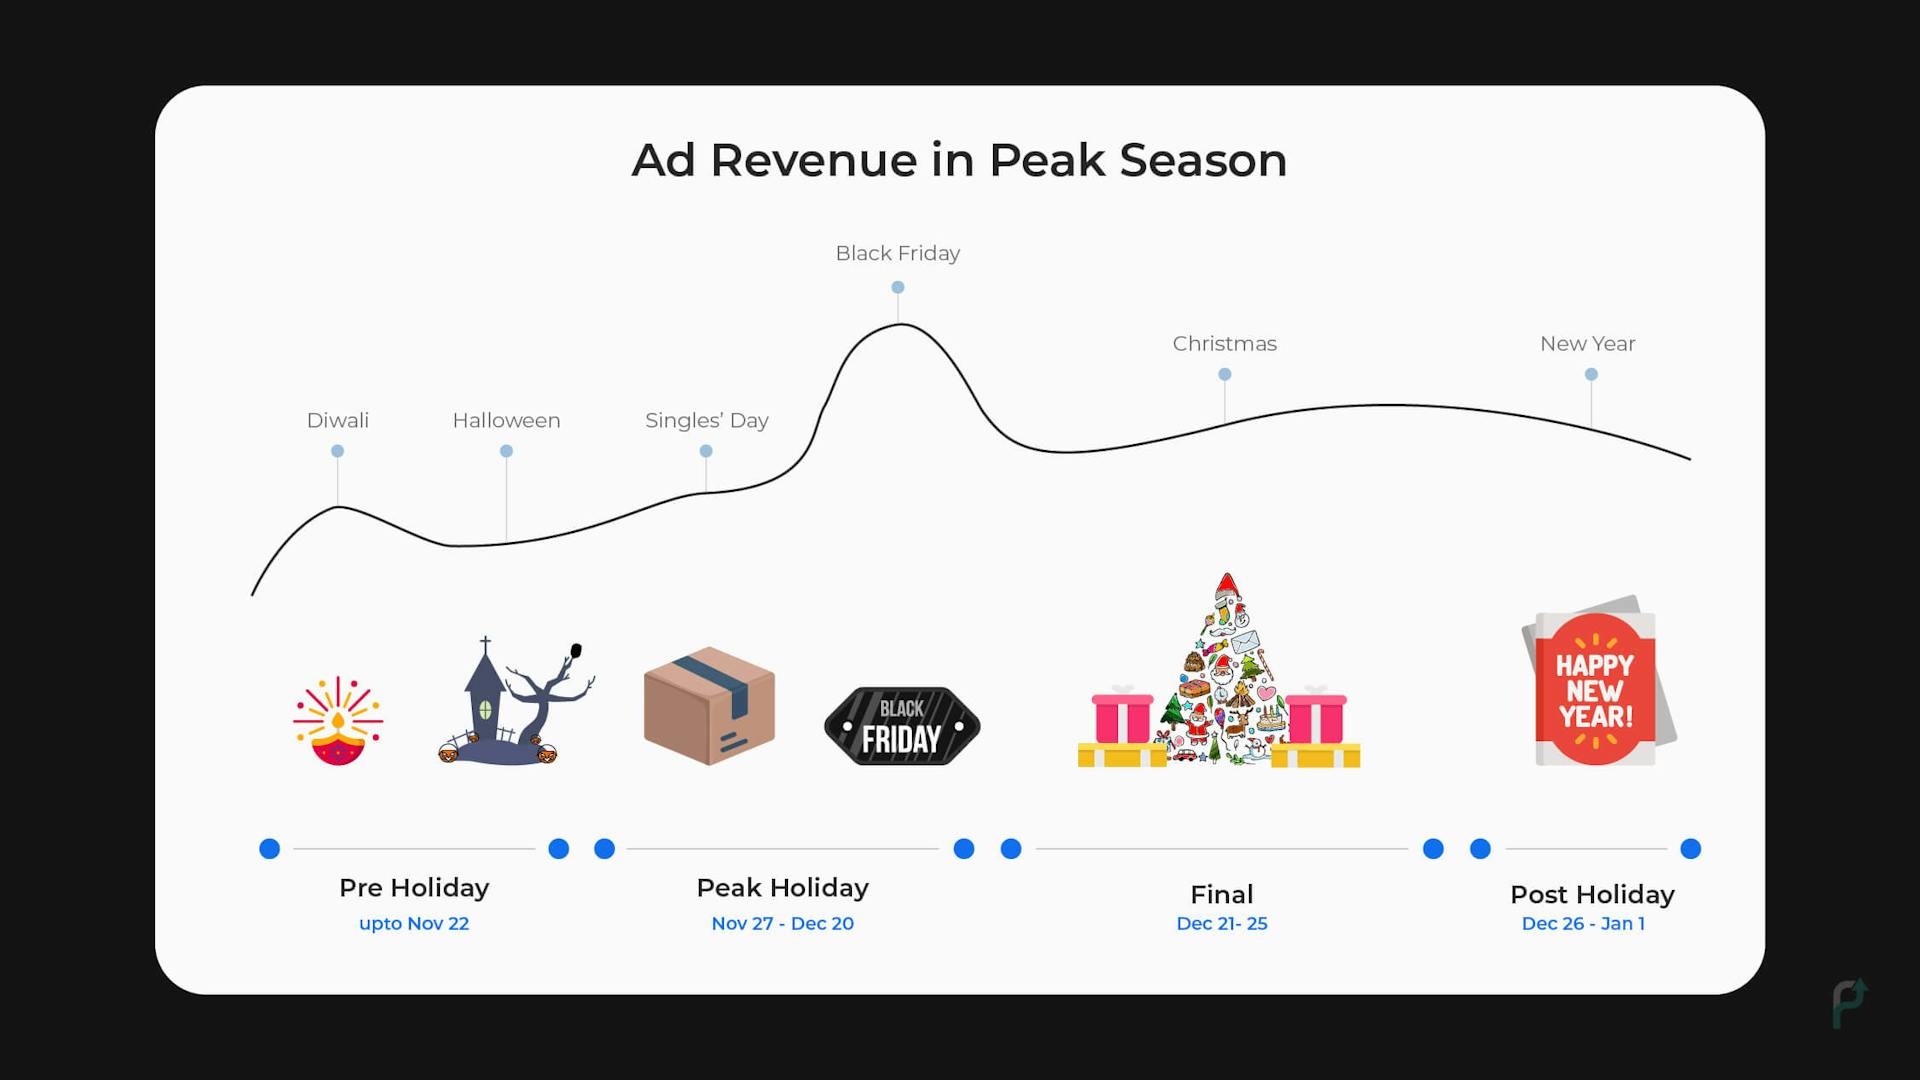 Ad revenue in peak season